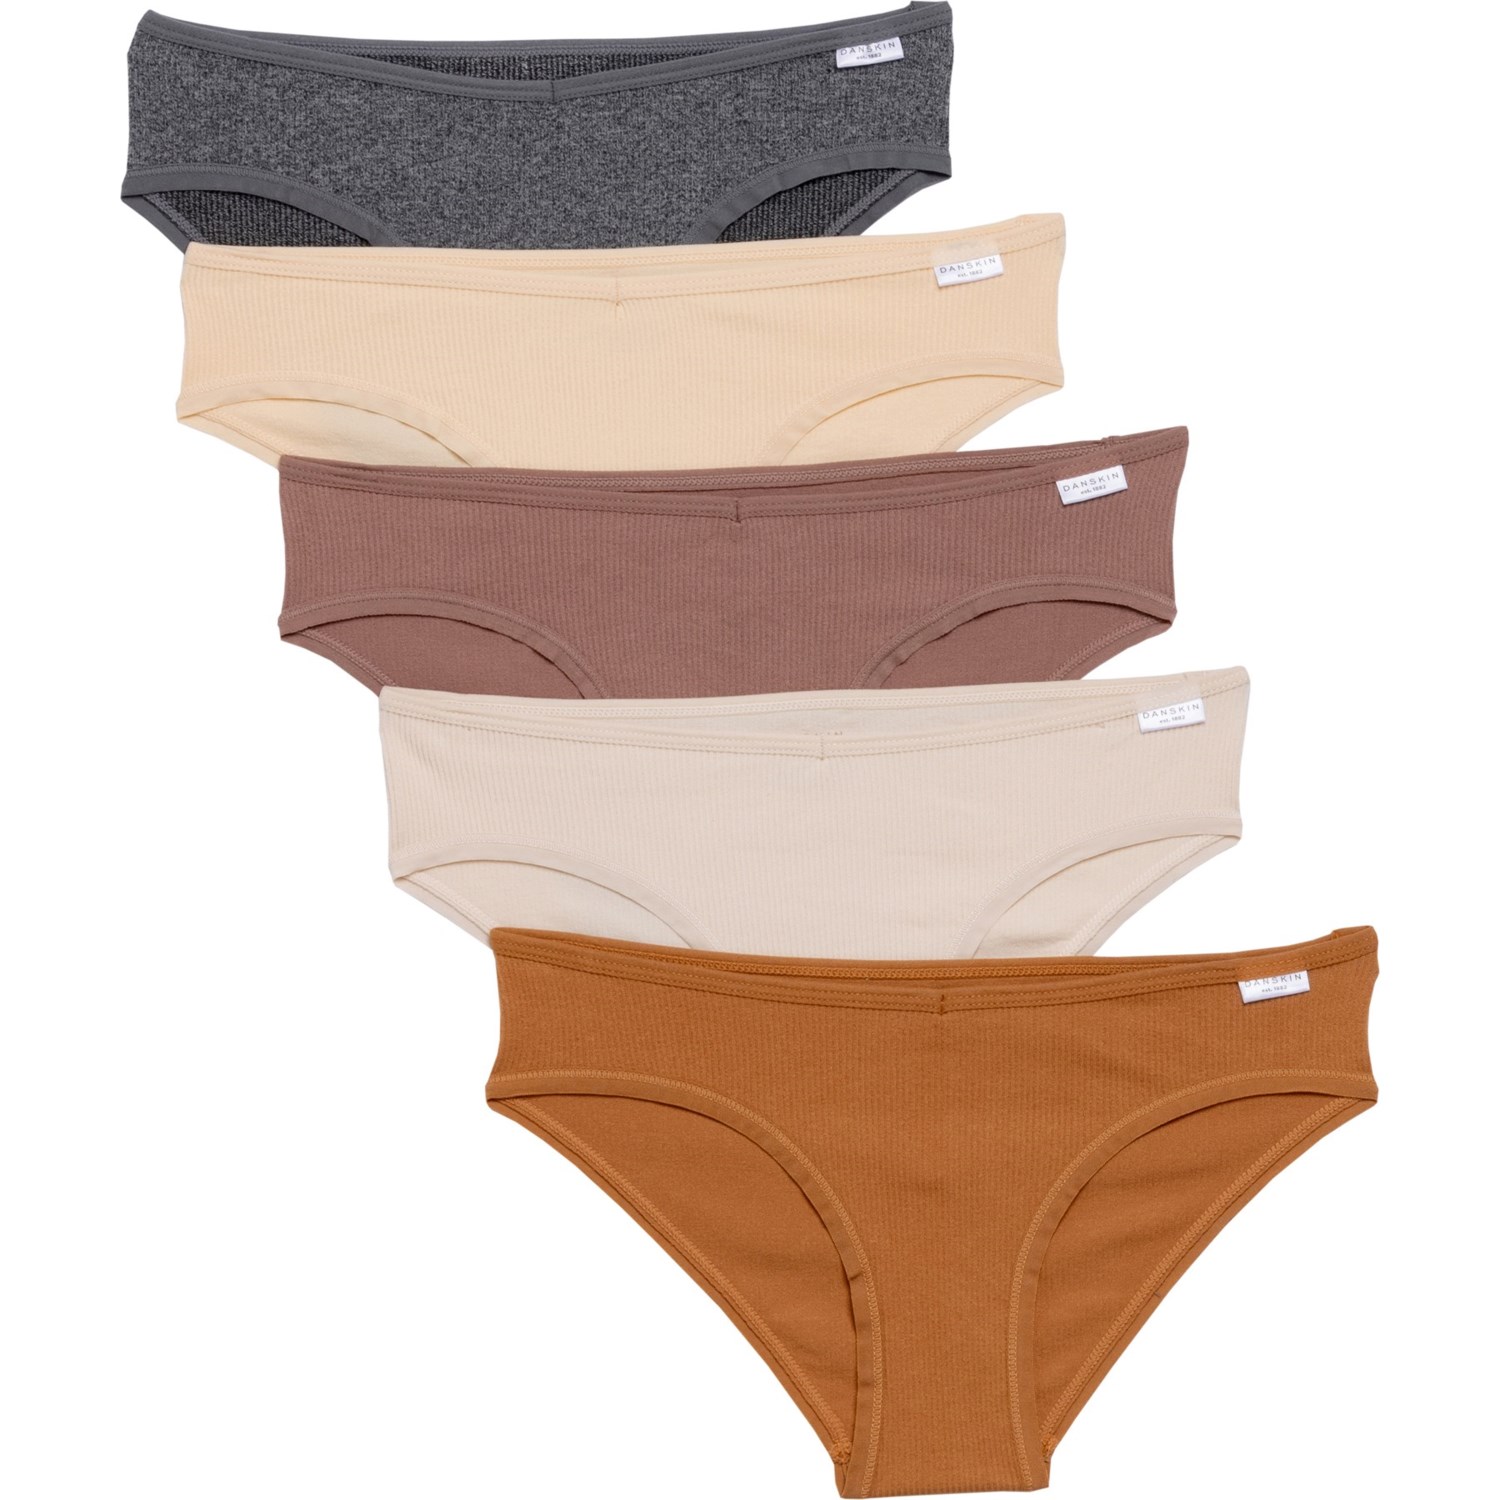 Danskin Seamless Ribbed Panties - 5-Pack, Bikini Brief - Save 64%